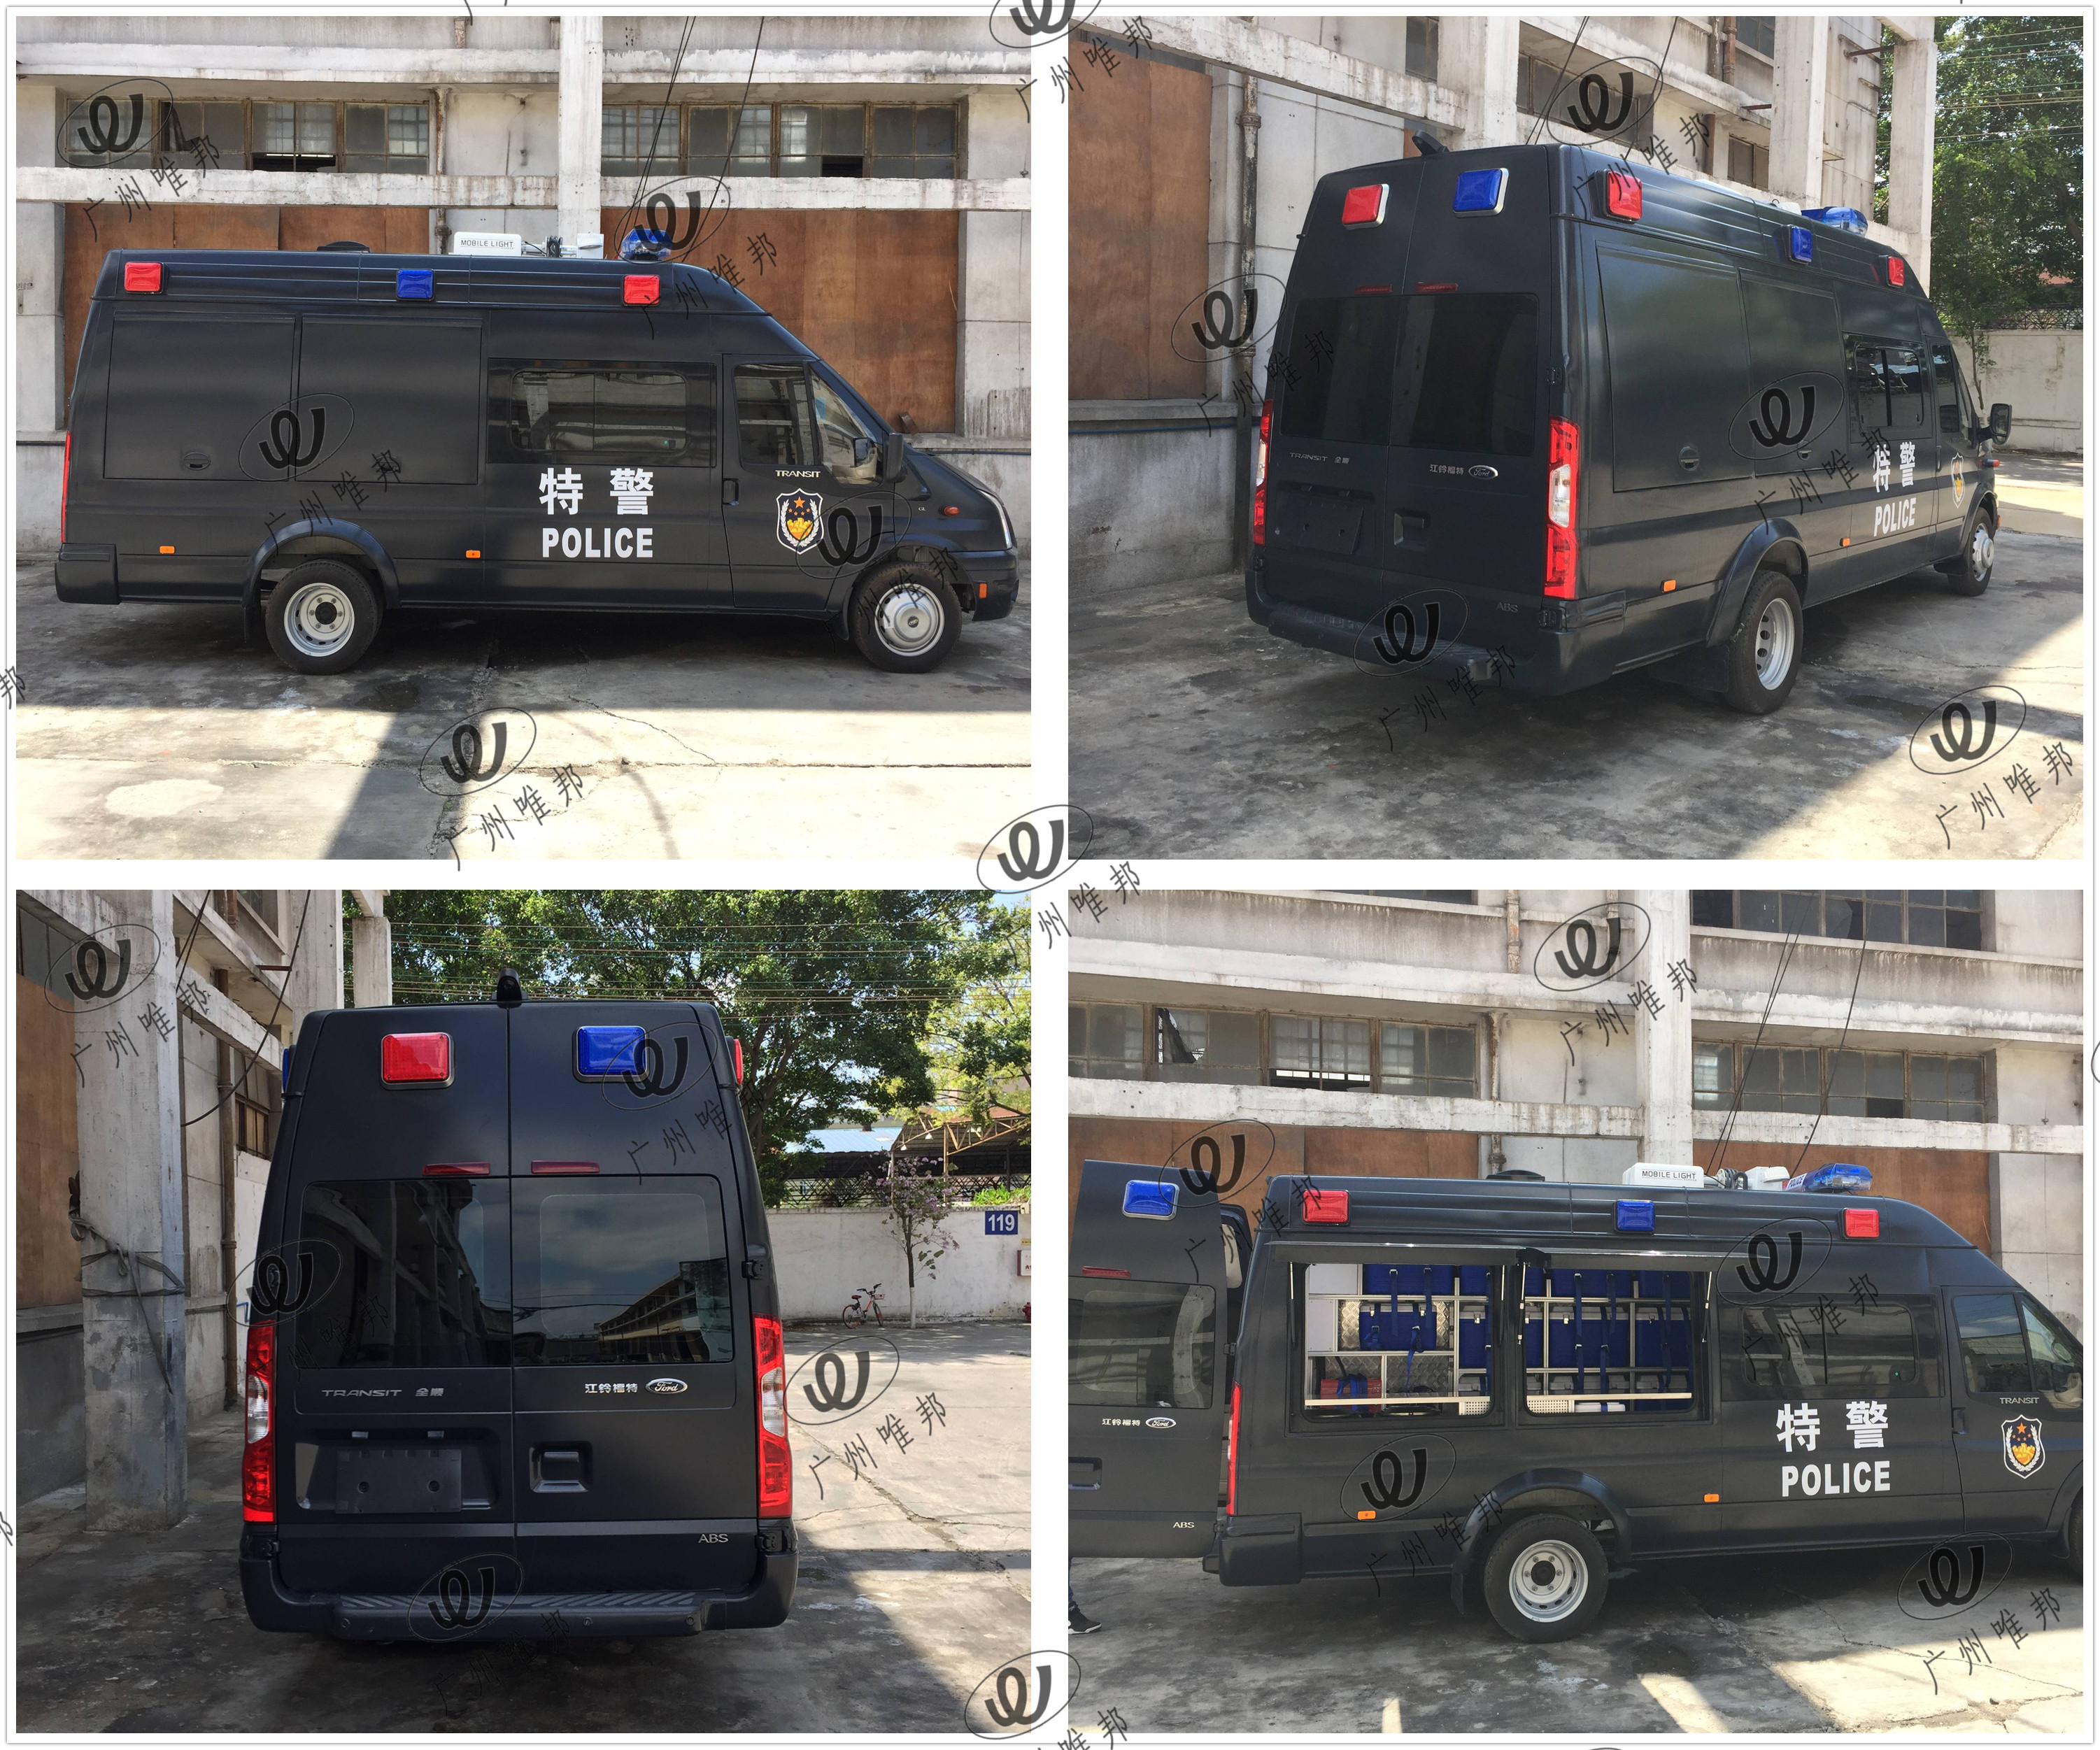 全顺后勤保障车(餐车) - 警用车辆系列-广州监测车